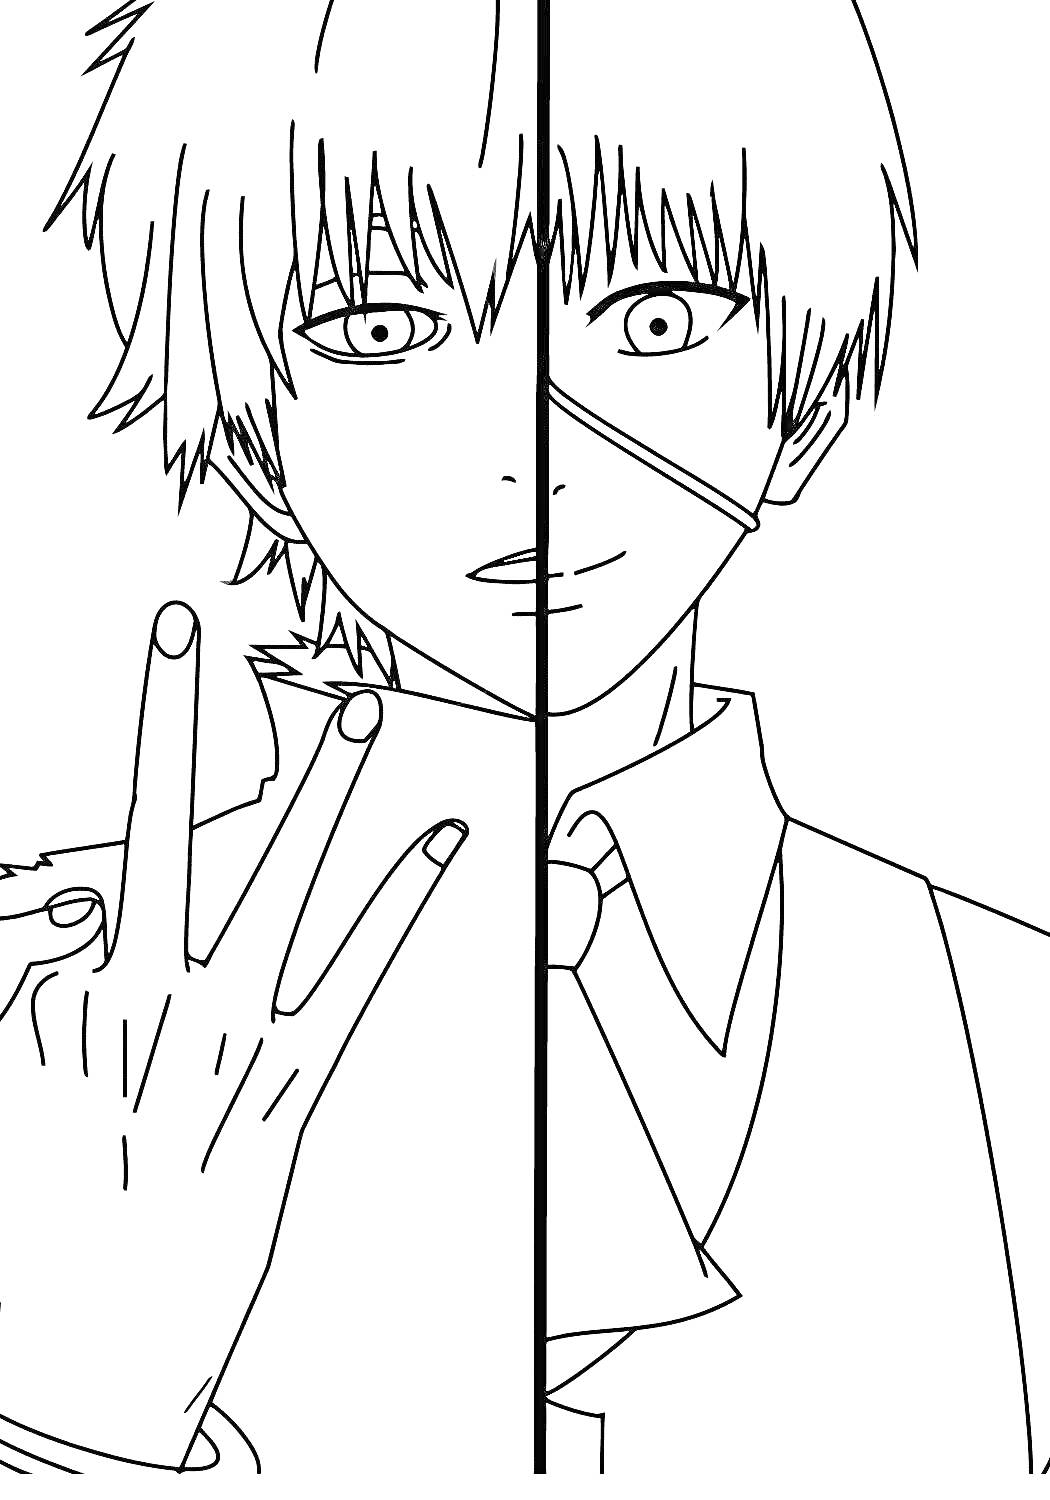 Раздвоение личности героя аниме Токийский гуль - портрет с разными выражениями лица и жестом руки.